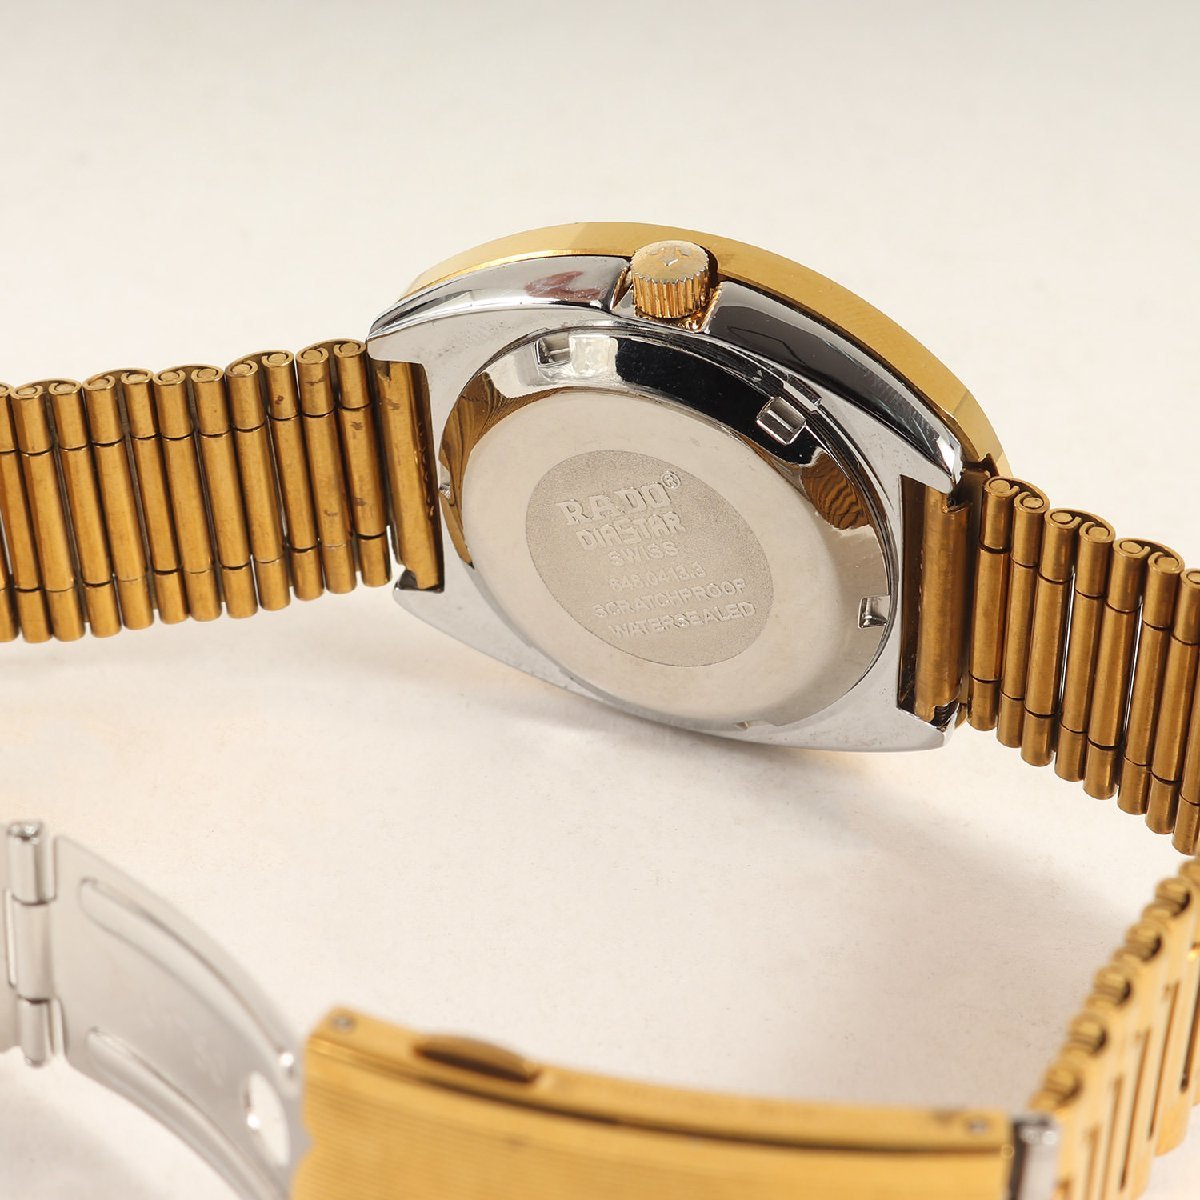 RADO Rado Diastar дата самозаводящиеся часы DiaStar 648.0413.3 наручные часы автоматический Gold бренд часы стразы 